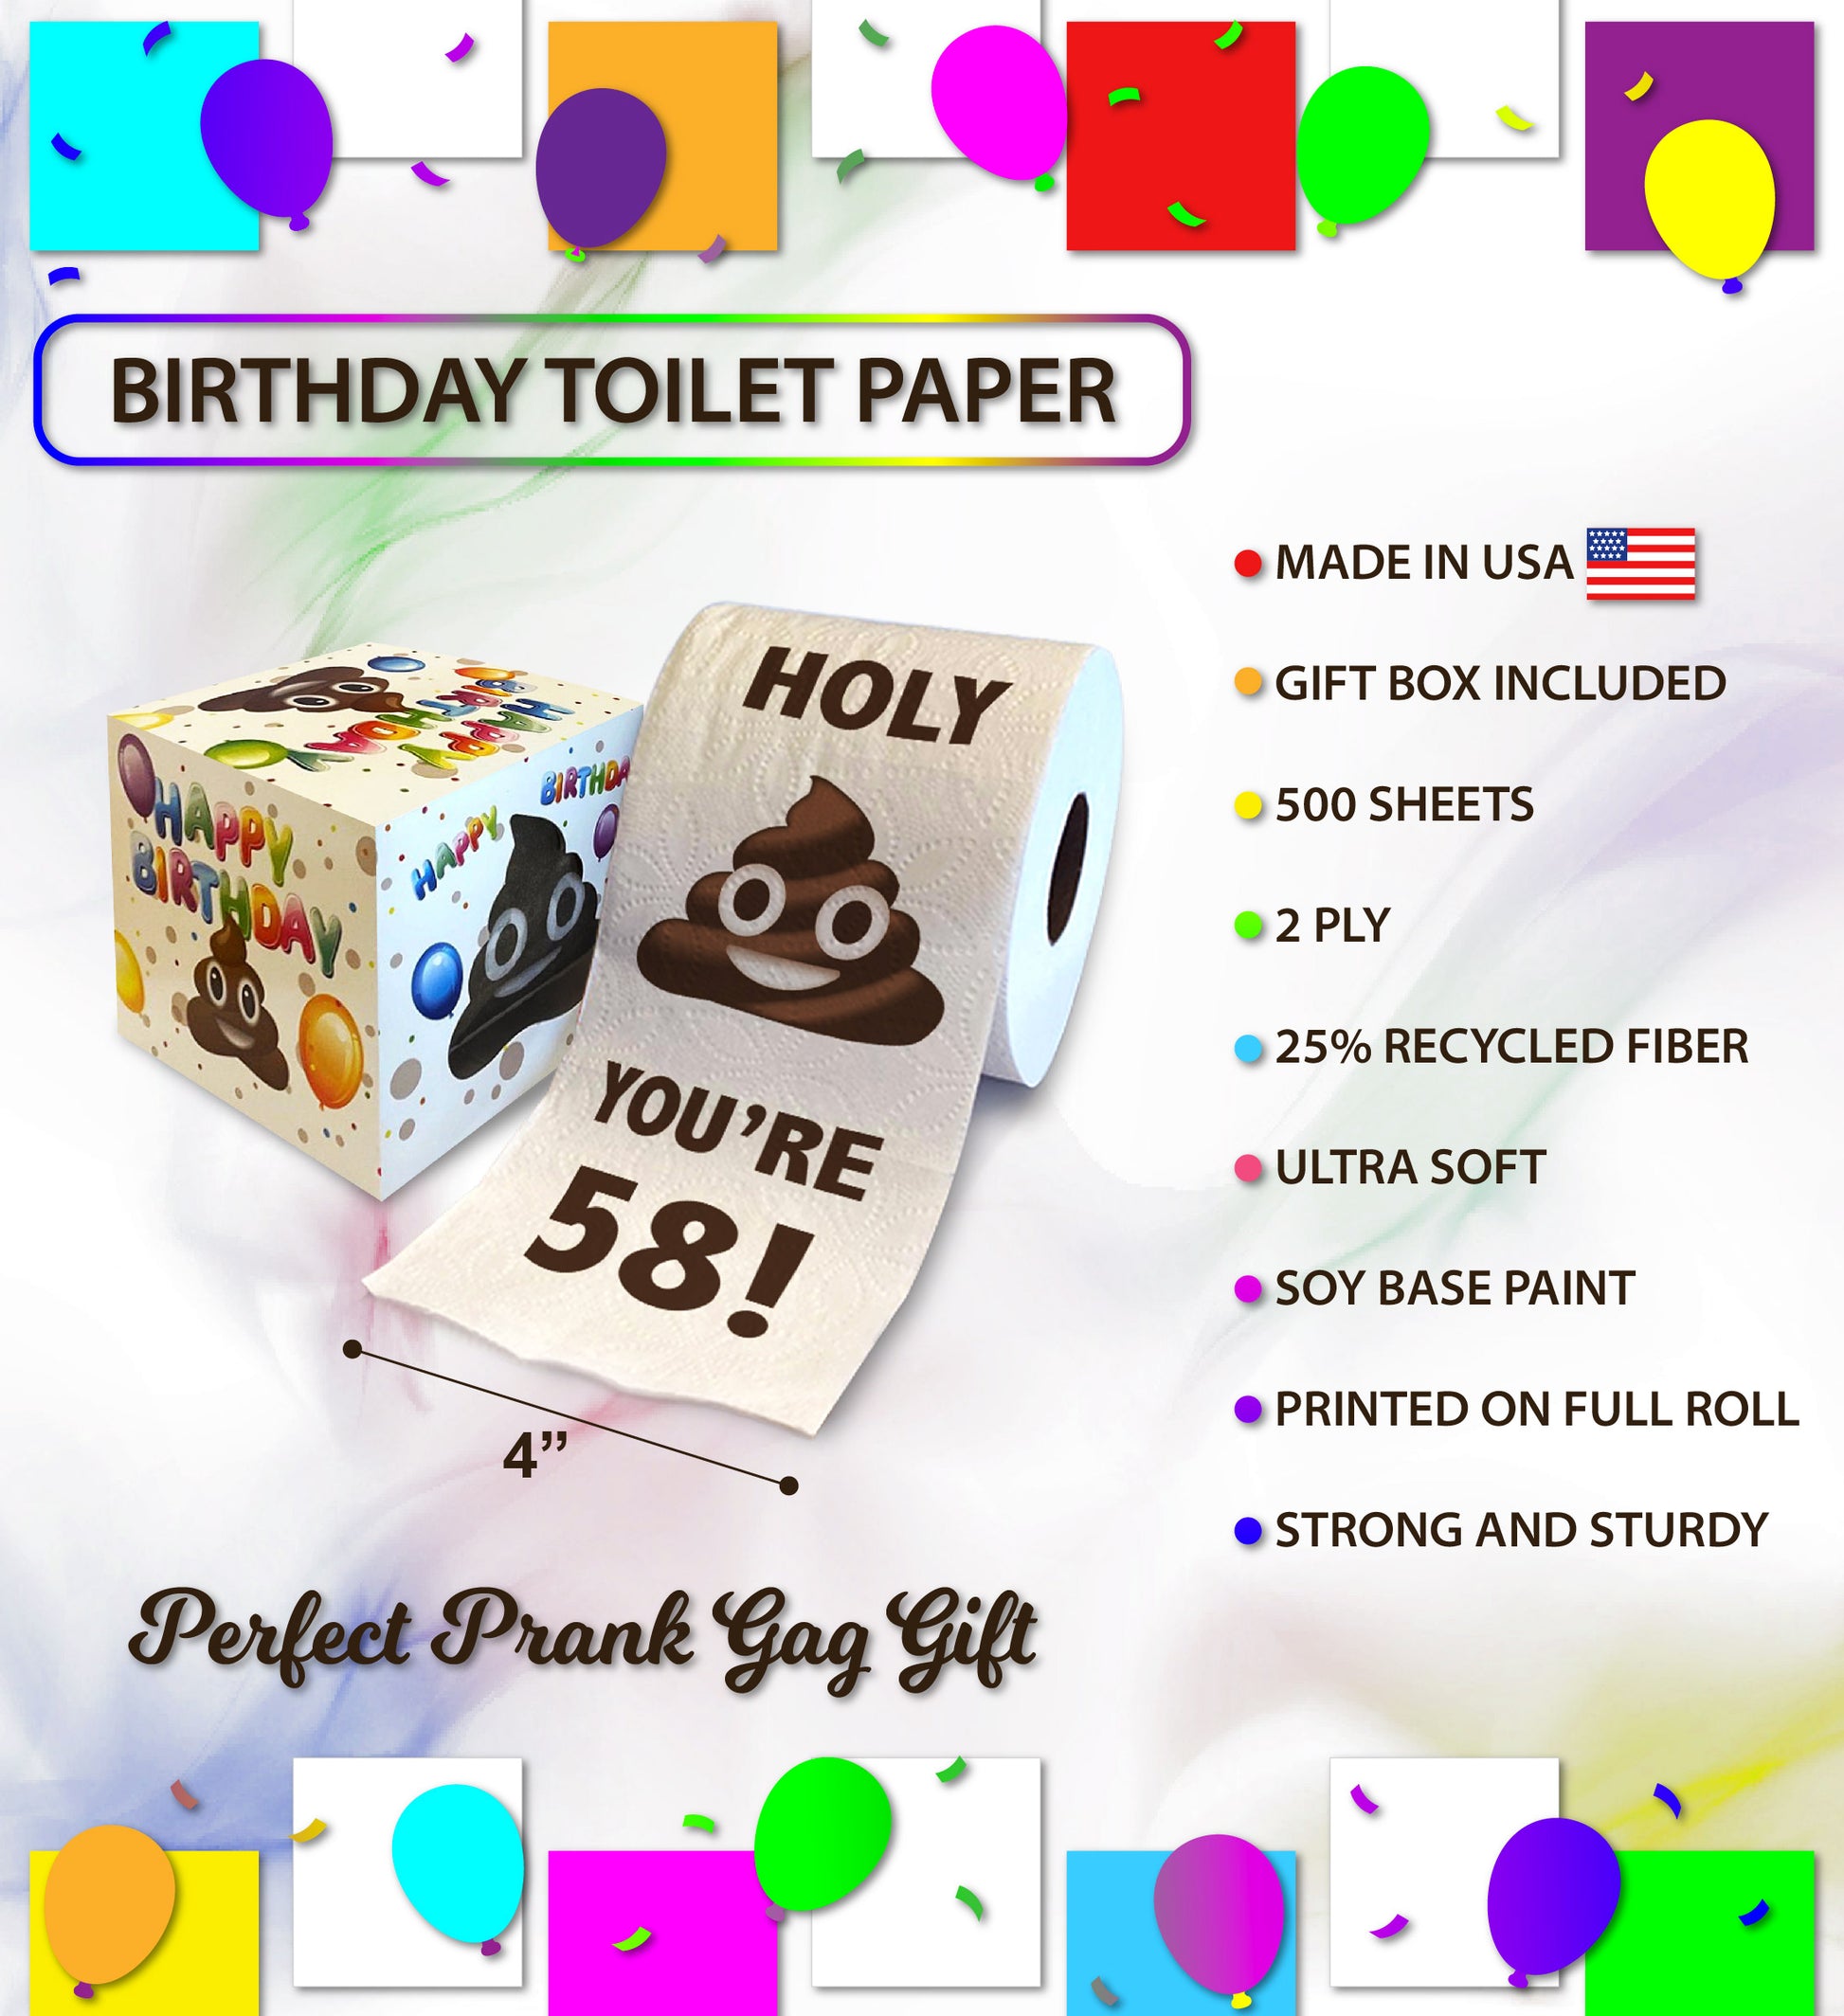 Designer toilet paper: $777